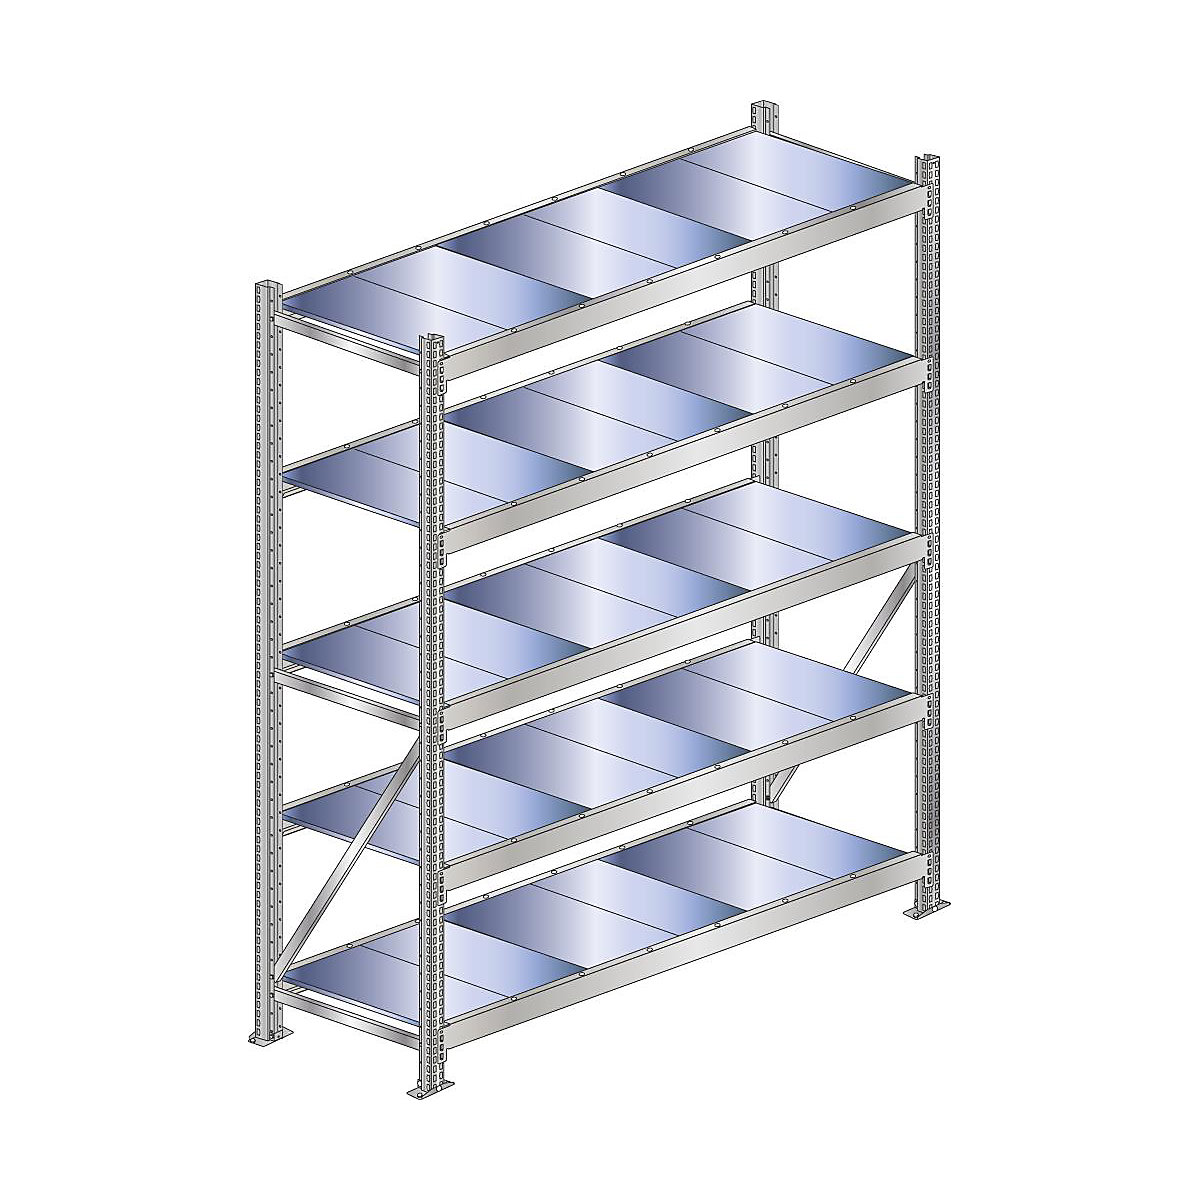 Wide span shelf unit, shelf load 500 kg – SCHULTE, shelf width 2000 mm, standard shelf unit, height 3000 mm, depth 500 mm